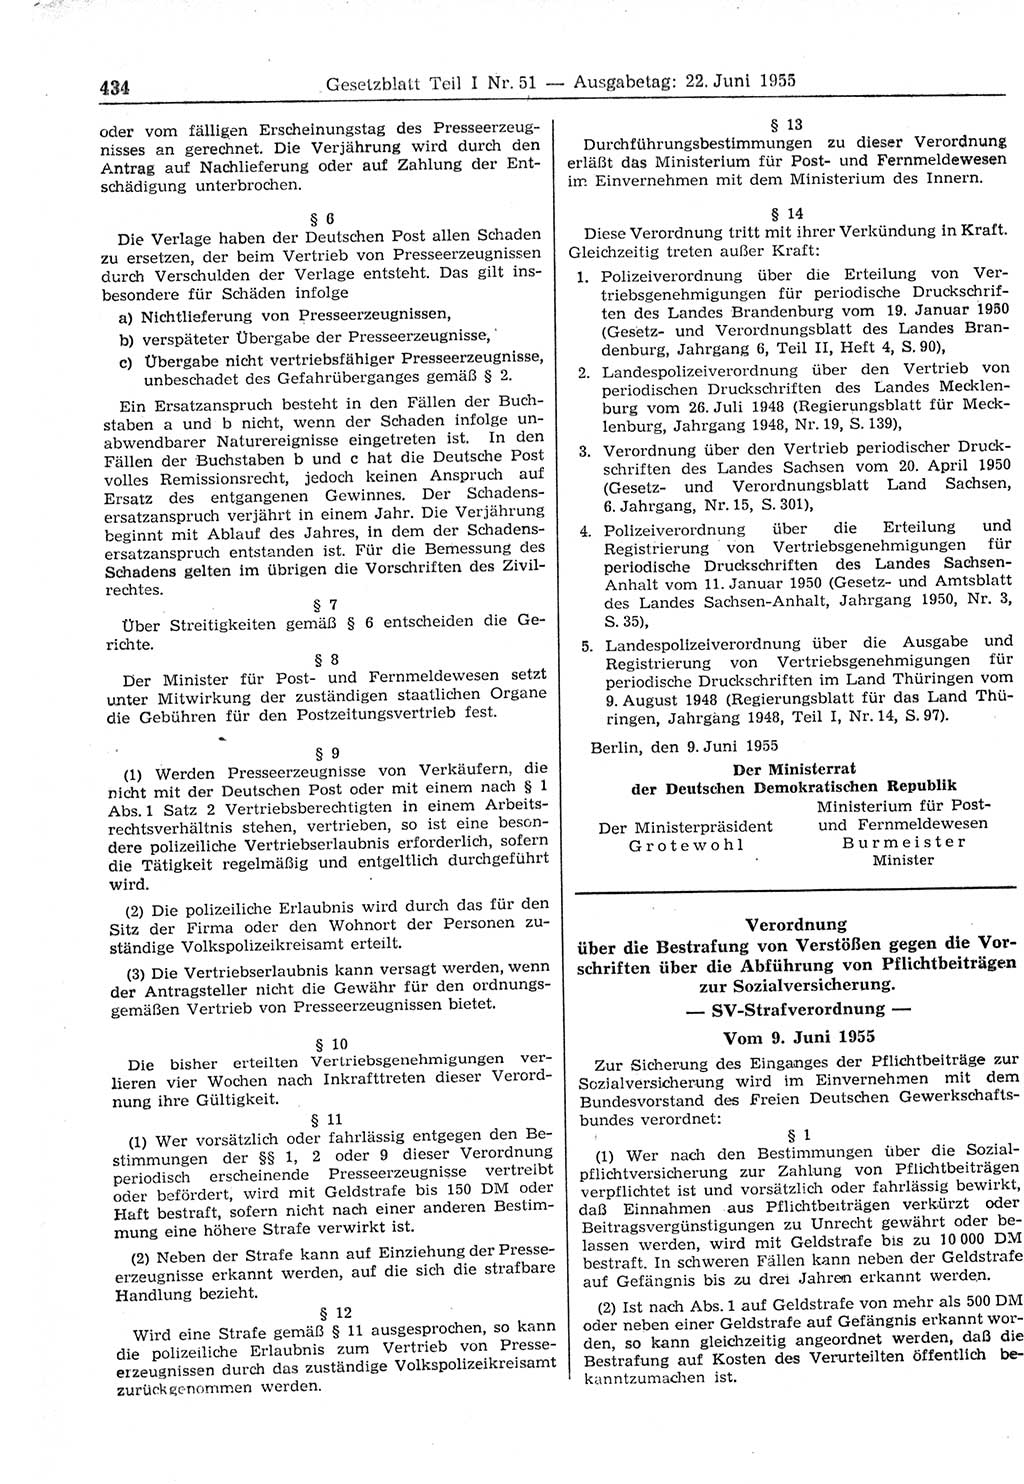 Gesetzblatt (GBl.) der Deutschen Demokratischen Republik (DDR) Teil Ⅰ 1955, Seite 434 (GBl. DDR Ⅰ 1955, S. 434)